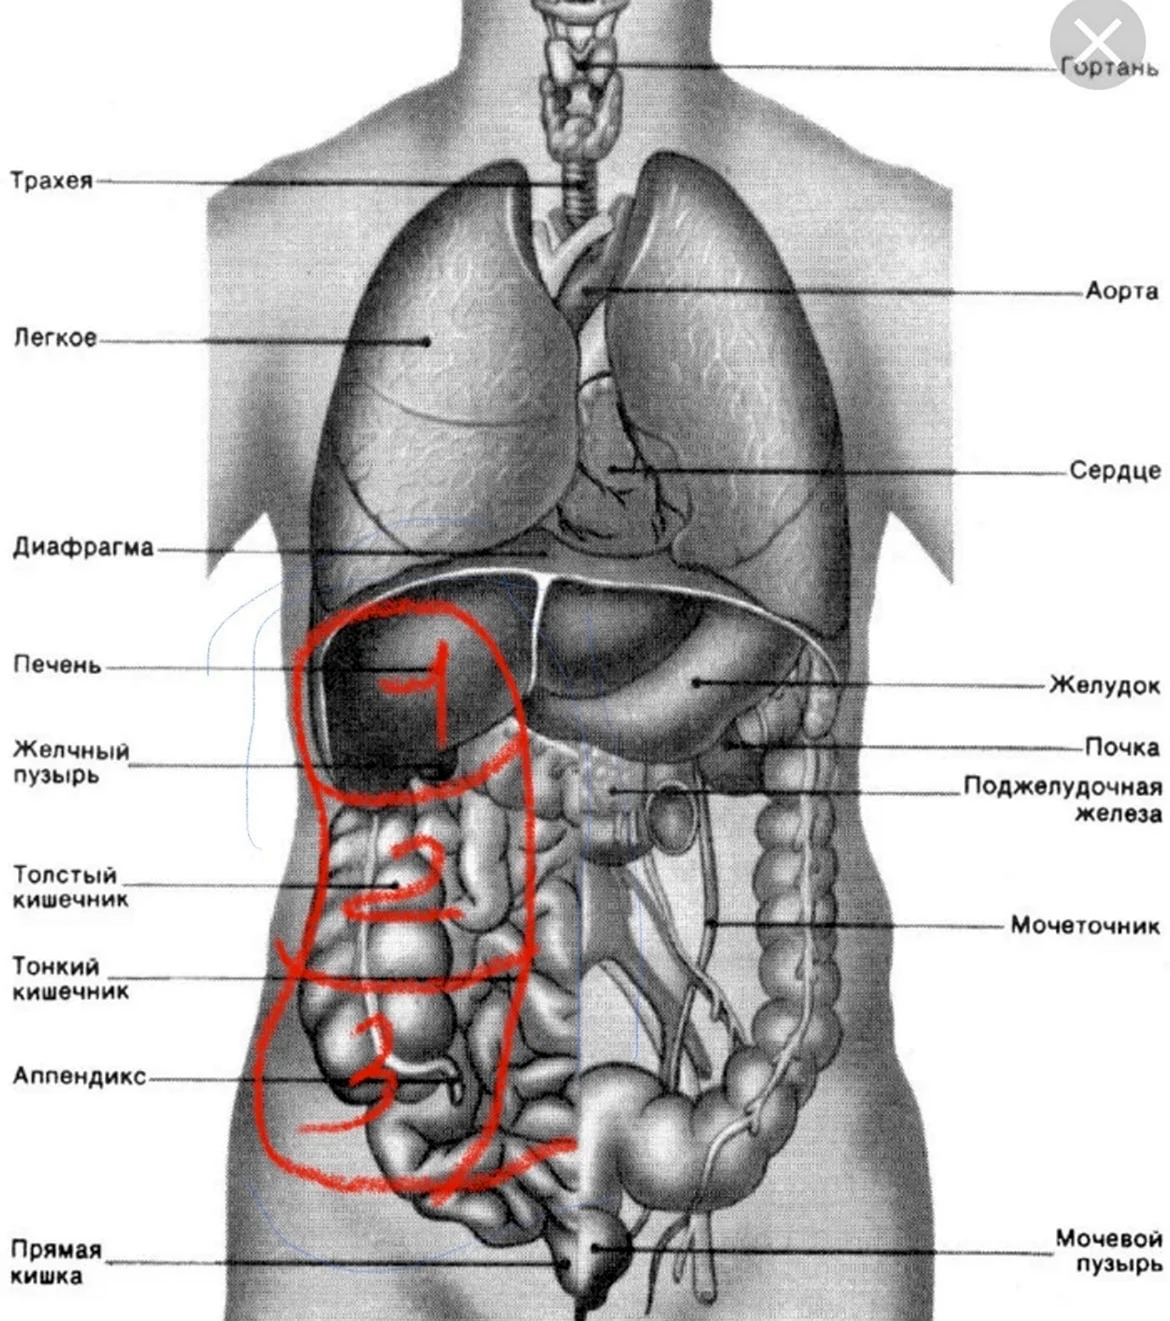 Внутренние органы человека схема расположения. Картинка